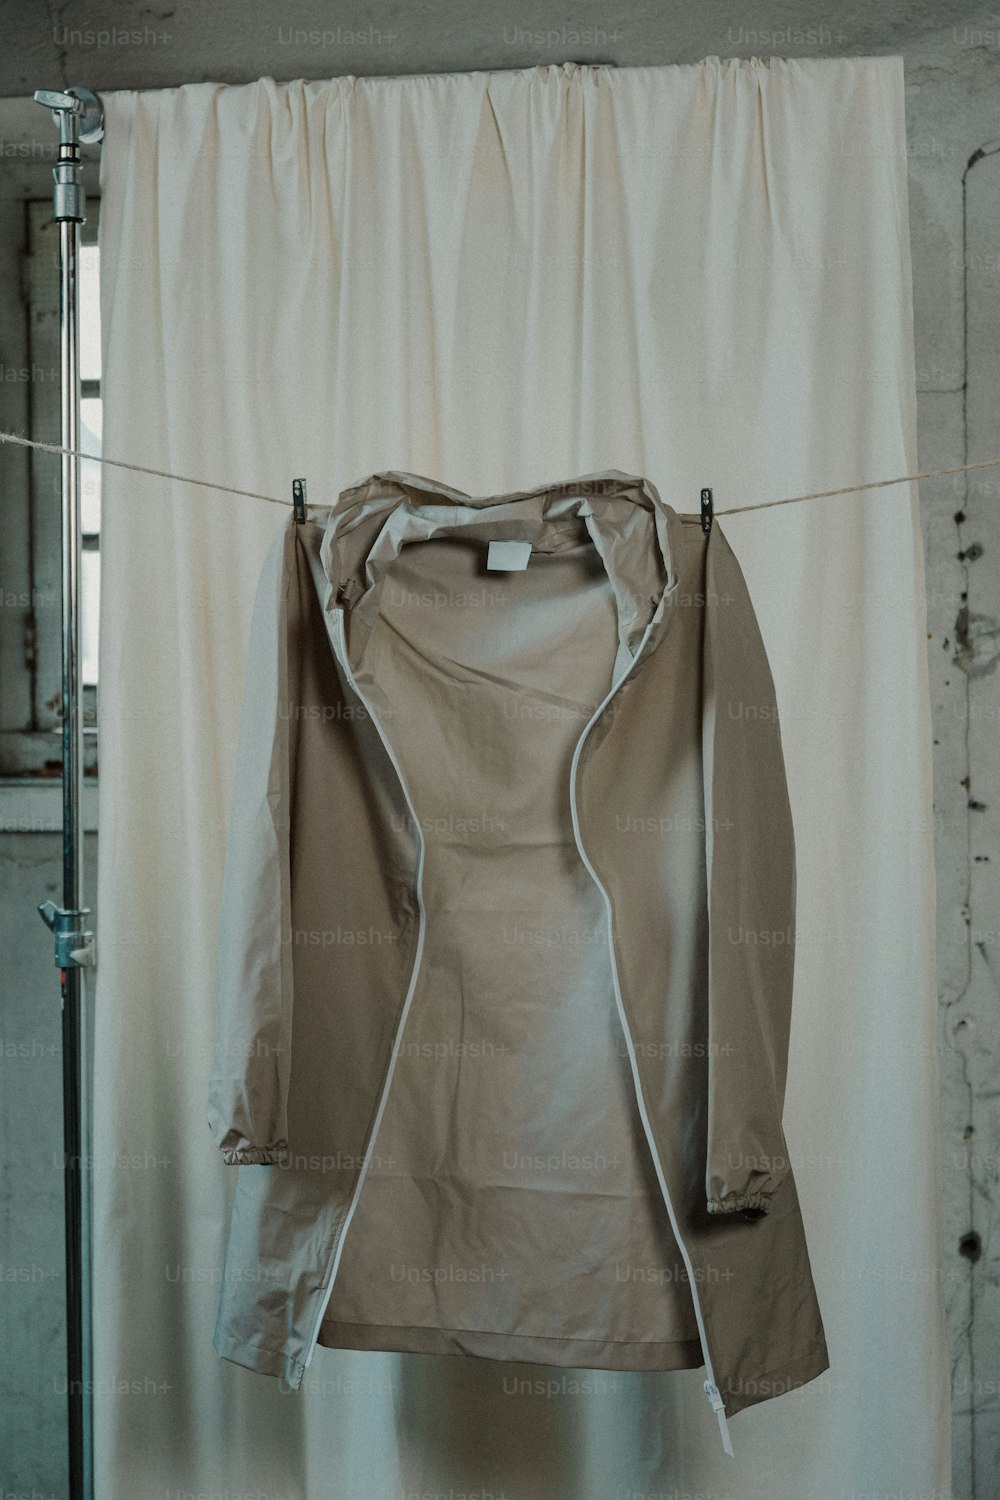 una chaqueta colgada en un tendedero frente a una cortina